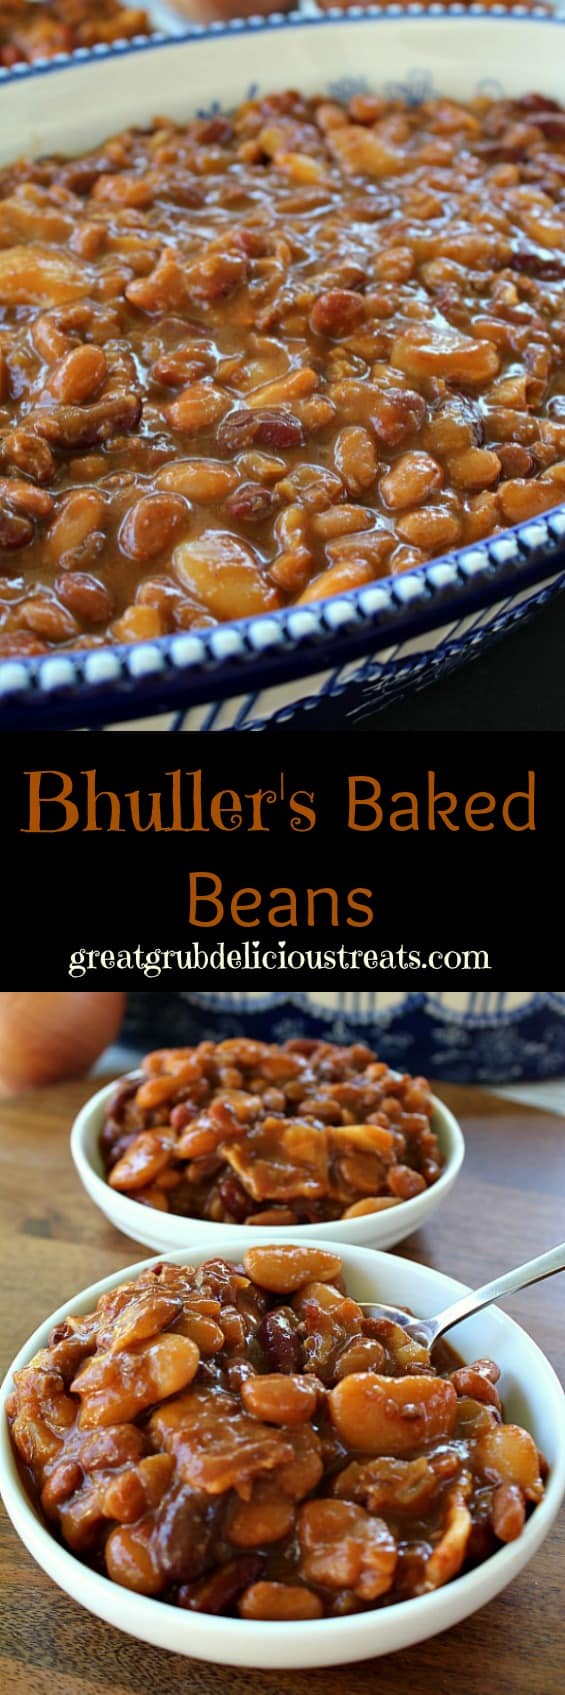 Bhuller's Baked Beans